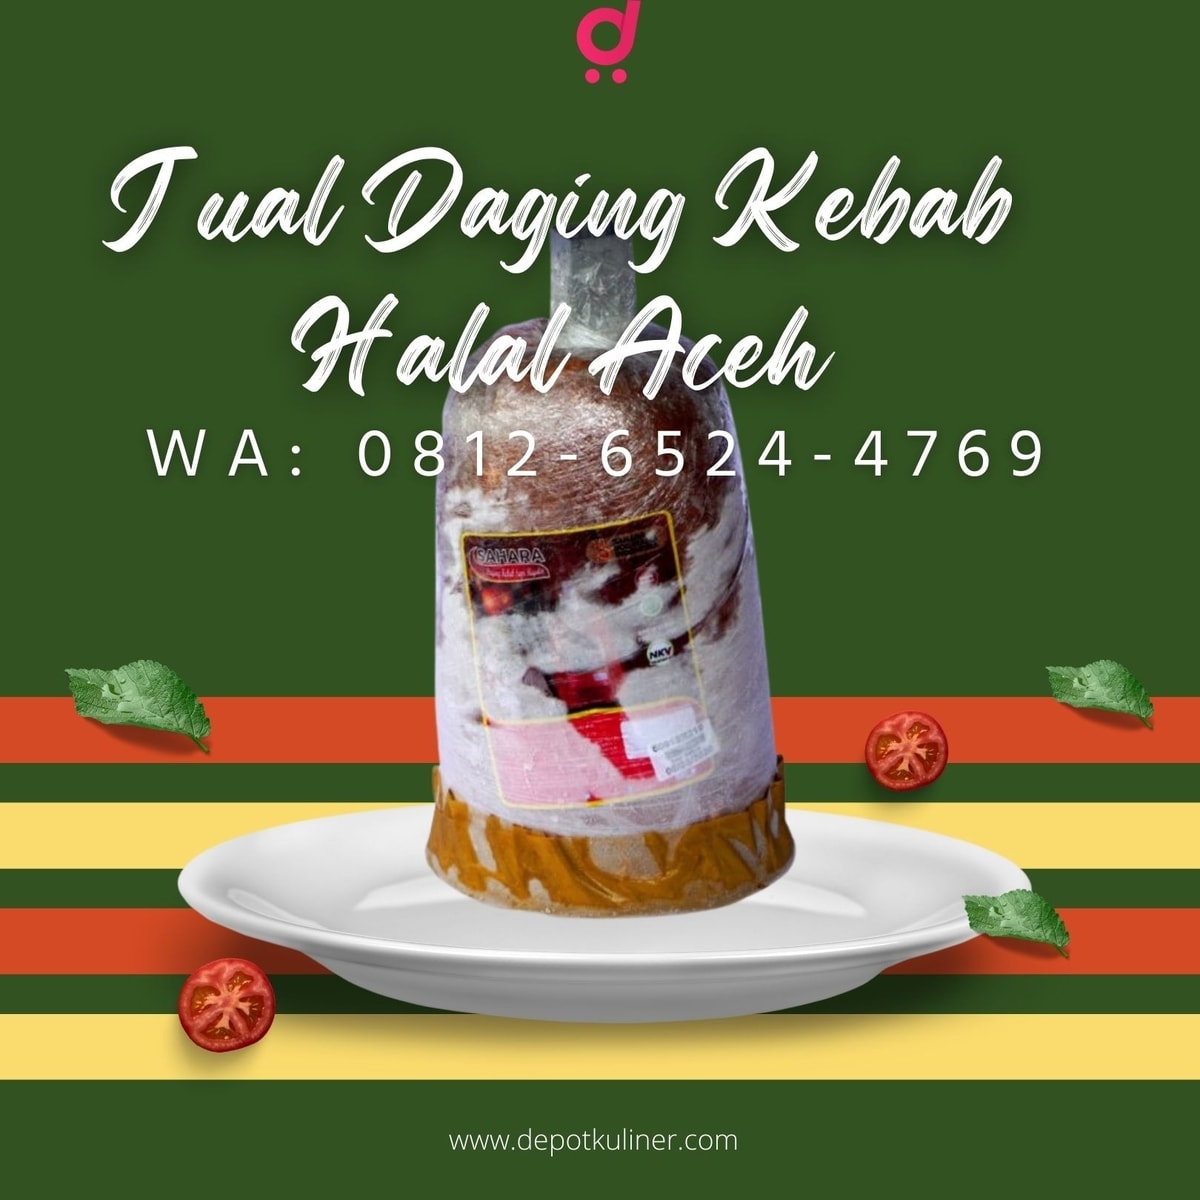 PALING LAKU, Call 0812-6524-4769, Jual Daging Kebab Halal Aceh